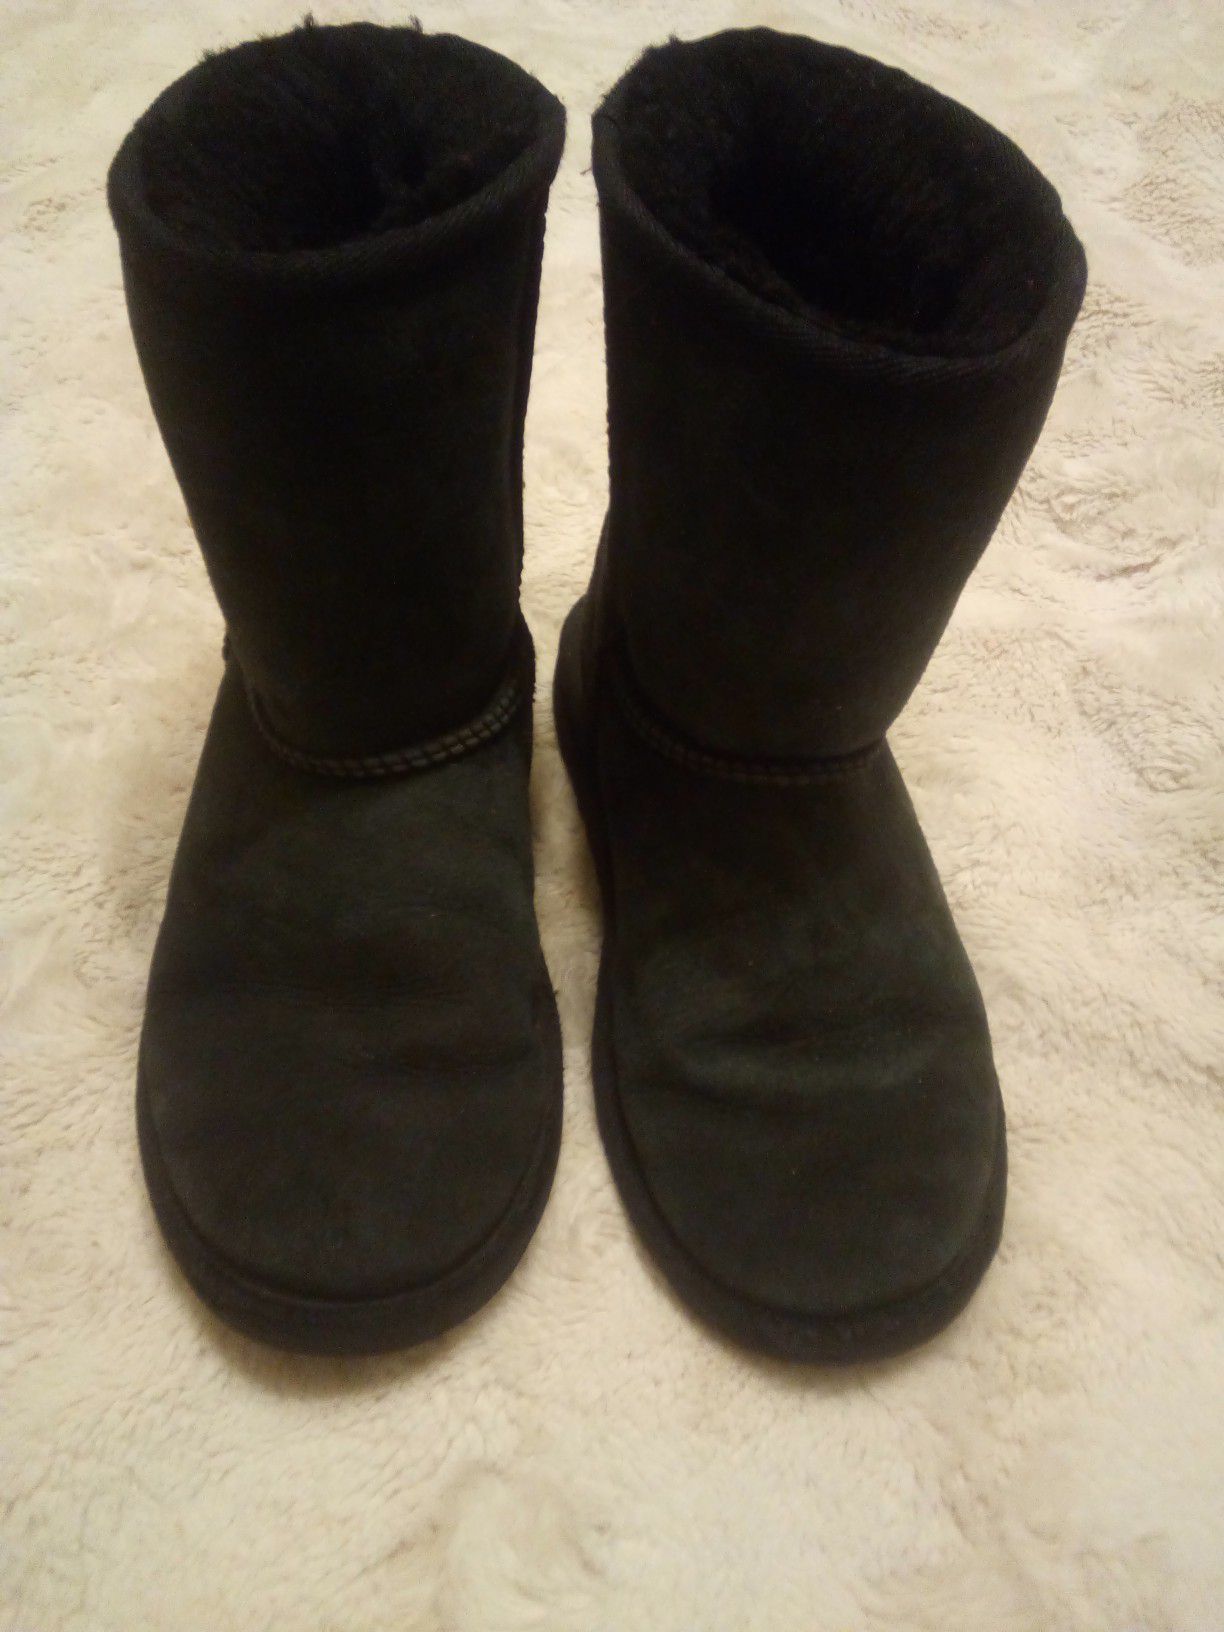 Size 2 kids black Ugg Boots